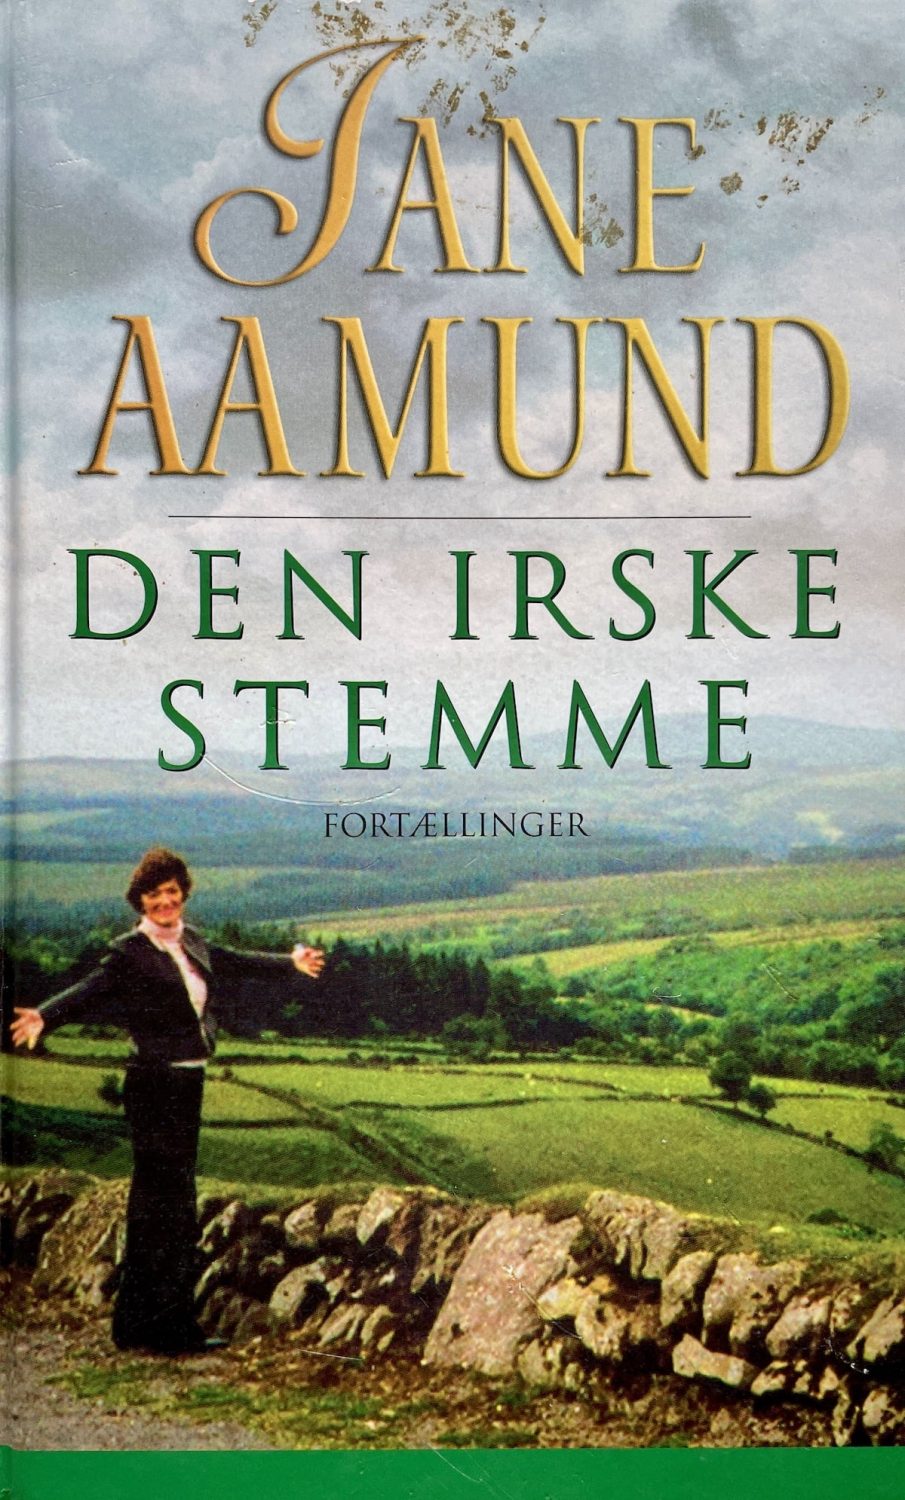 Den irske stemme, Jane Aamund, brugt bog